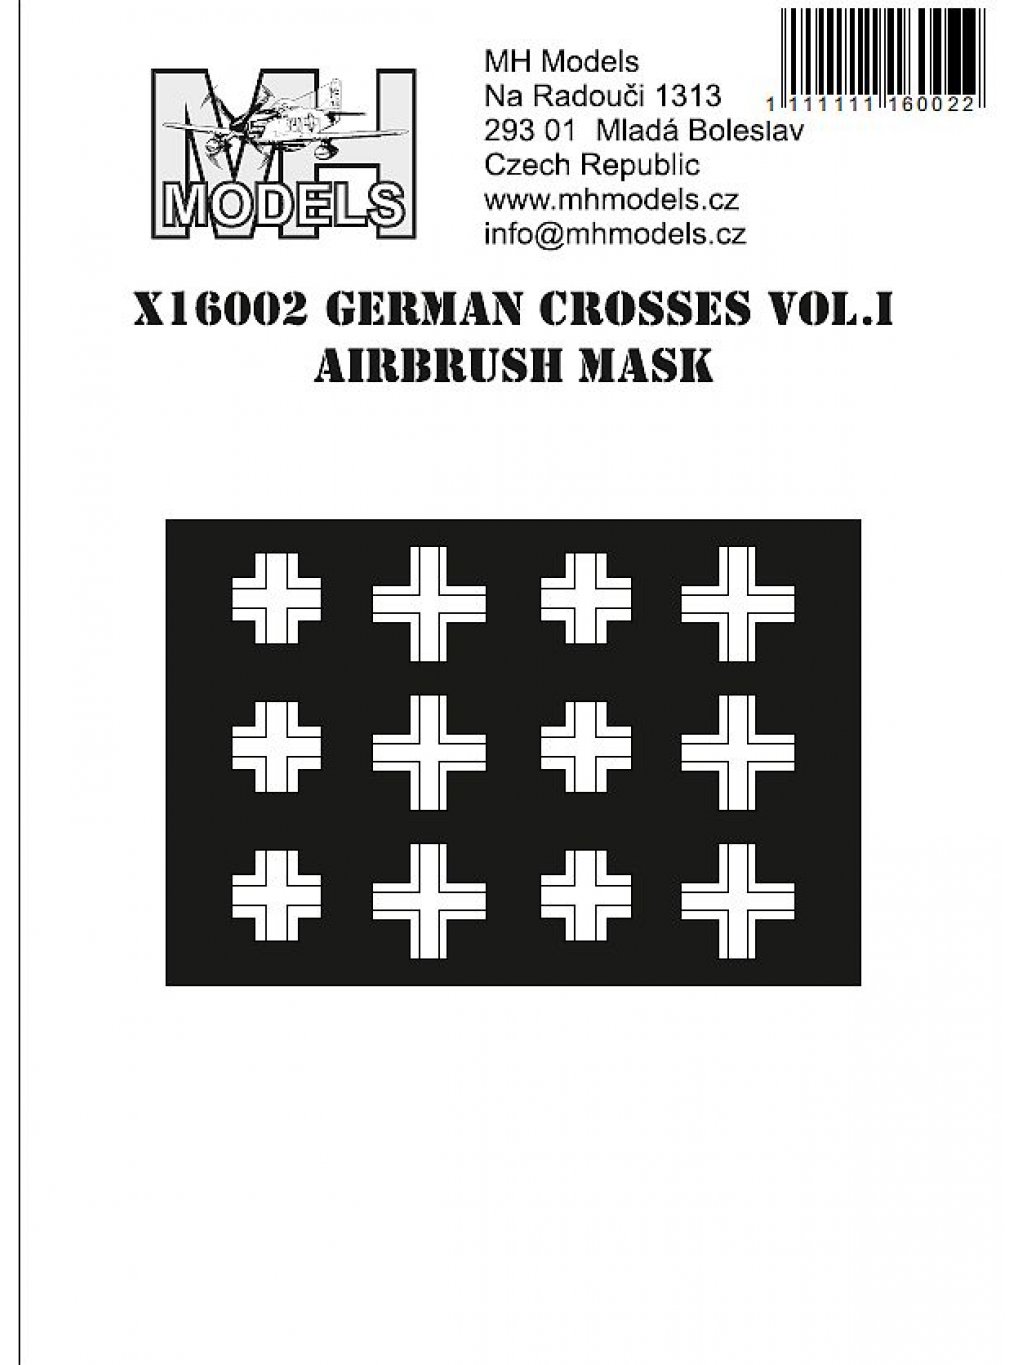 German crosses vol.I airbrush mask